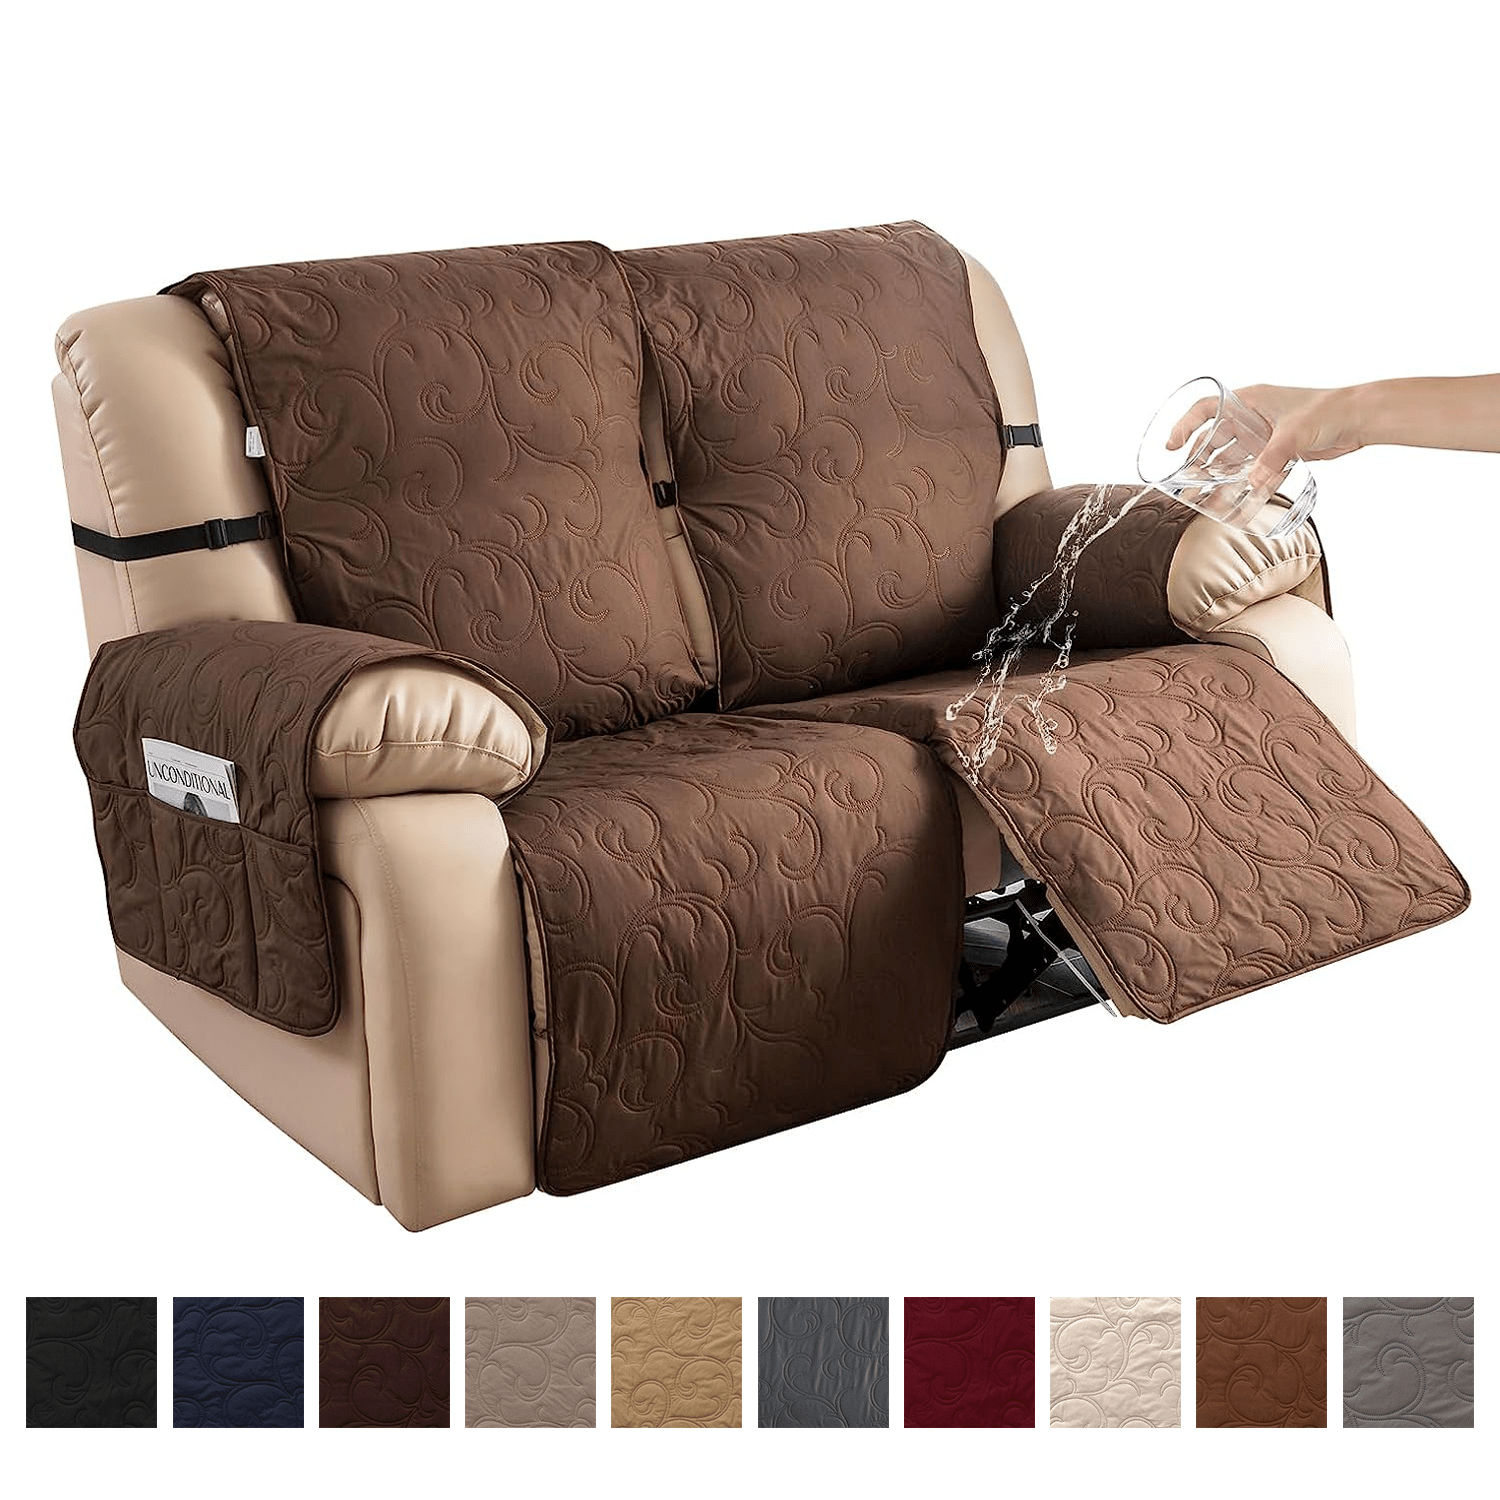  BW0057 Funda de sofá para sofá, sofá, decoración de moda,  acolchada, protector de muebles, fundas antideslizantes para Loveseat,  futón, reclinable, lavable a máquina (1 unidad, 43 x 83 pulgadas, marrón) 